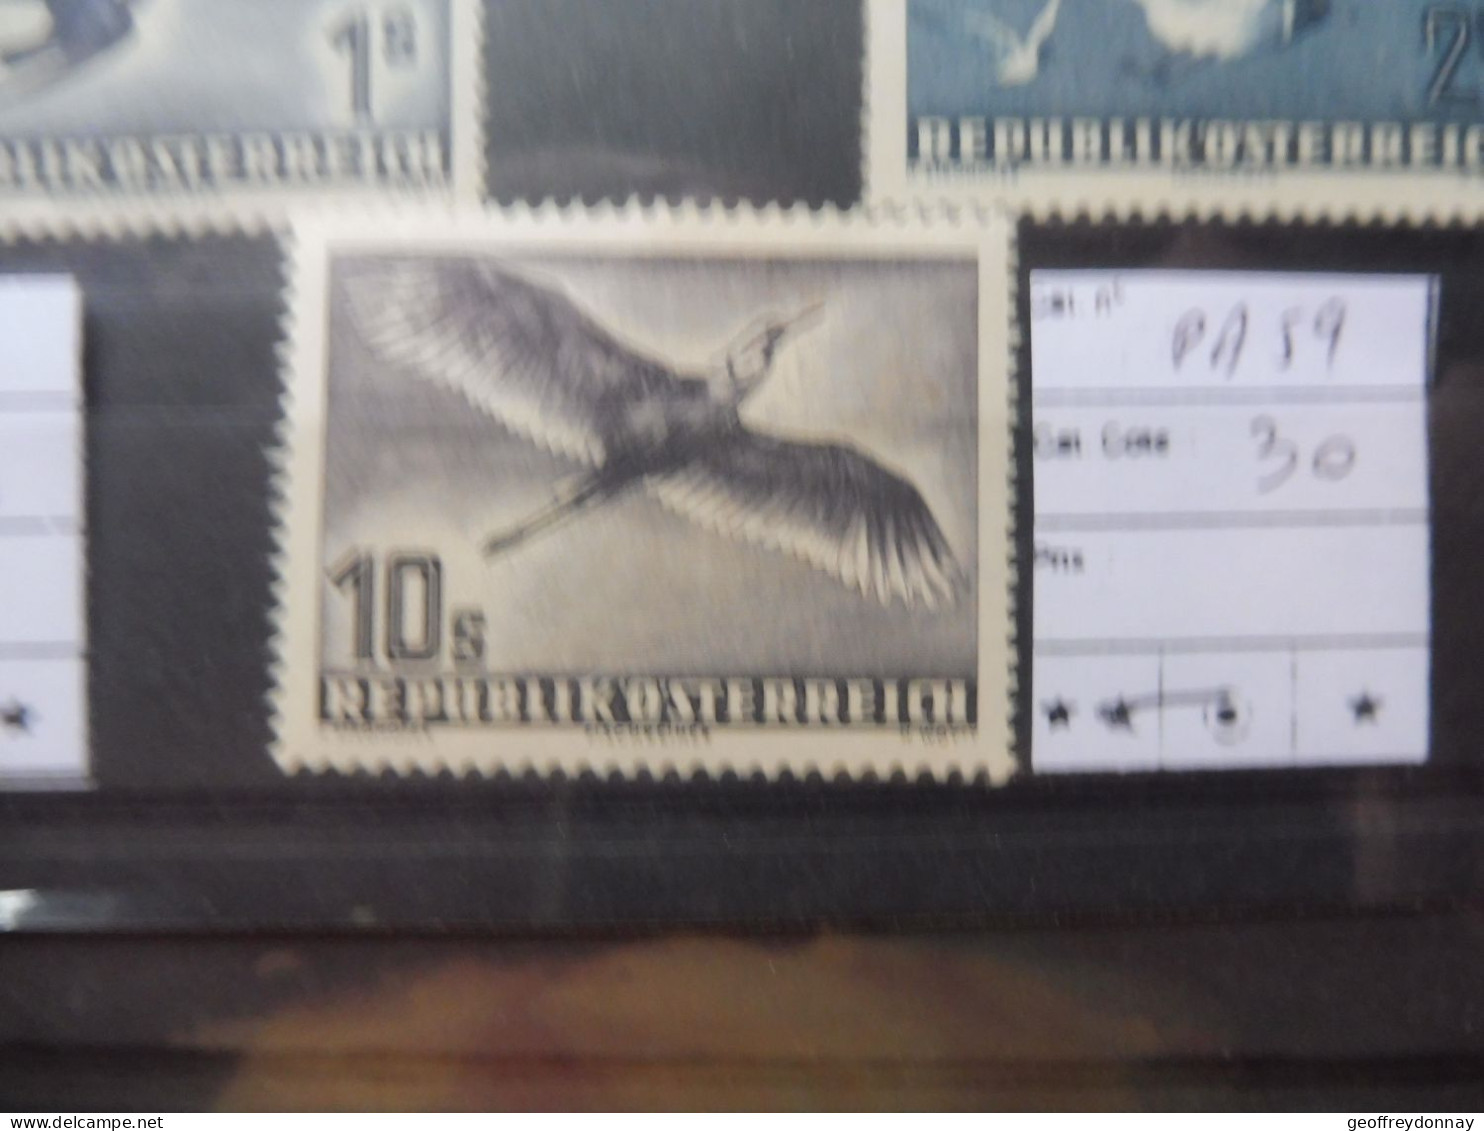 Autriche Osterreich Austria Pa Poste Aerienne 59  Mh Neuf * Plakken Perfect Parfait Etat Perfect Oiseaux Vogels Birds - Nuovi